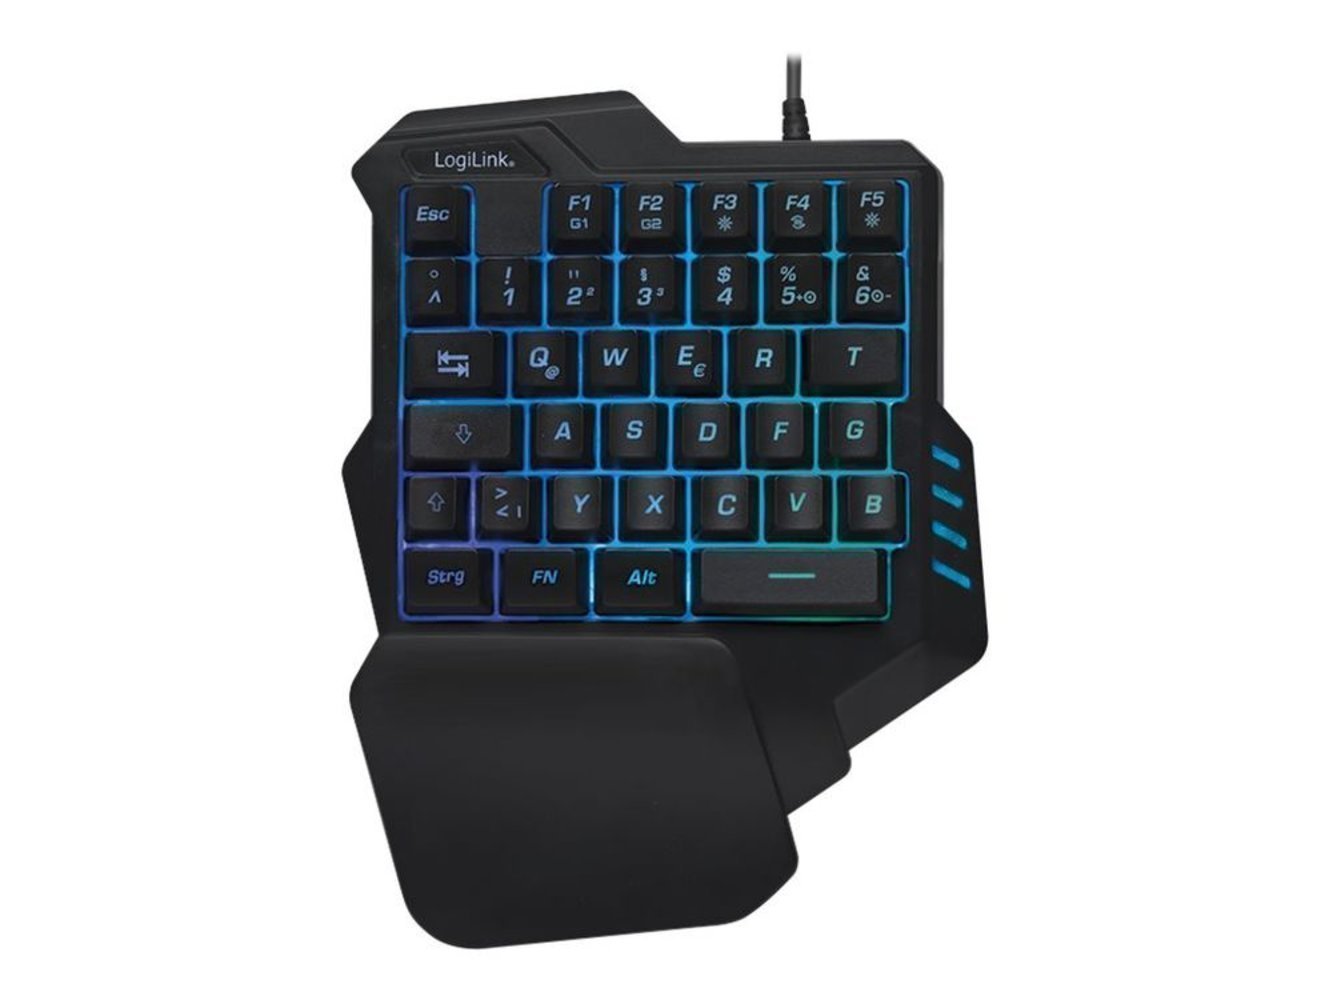 Einhand-Gaming Tastatur LogiLink mit schwarzer Beleuchtung